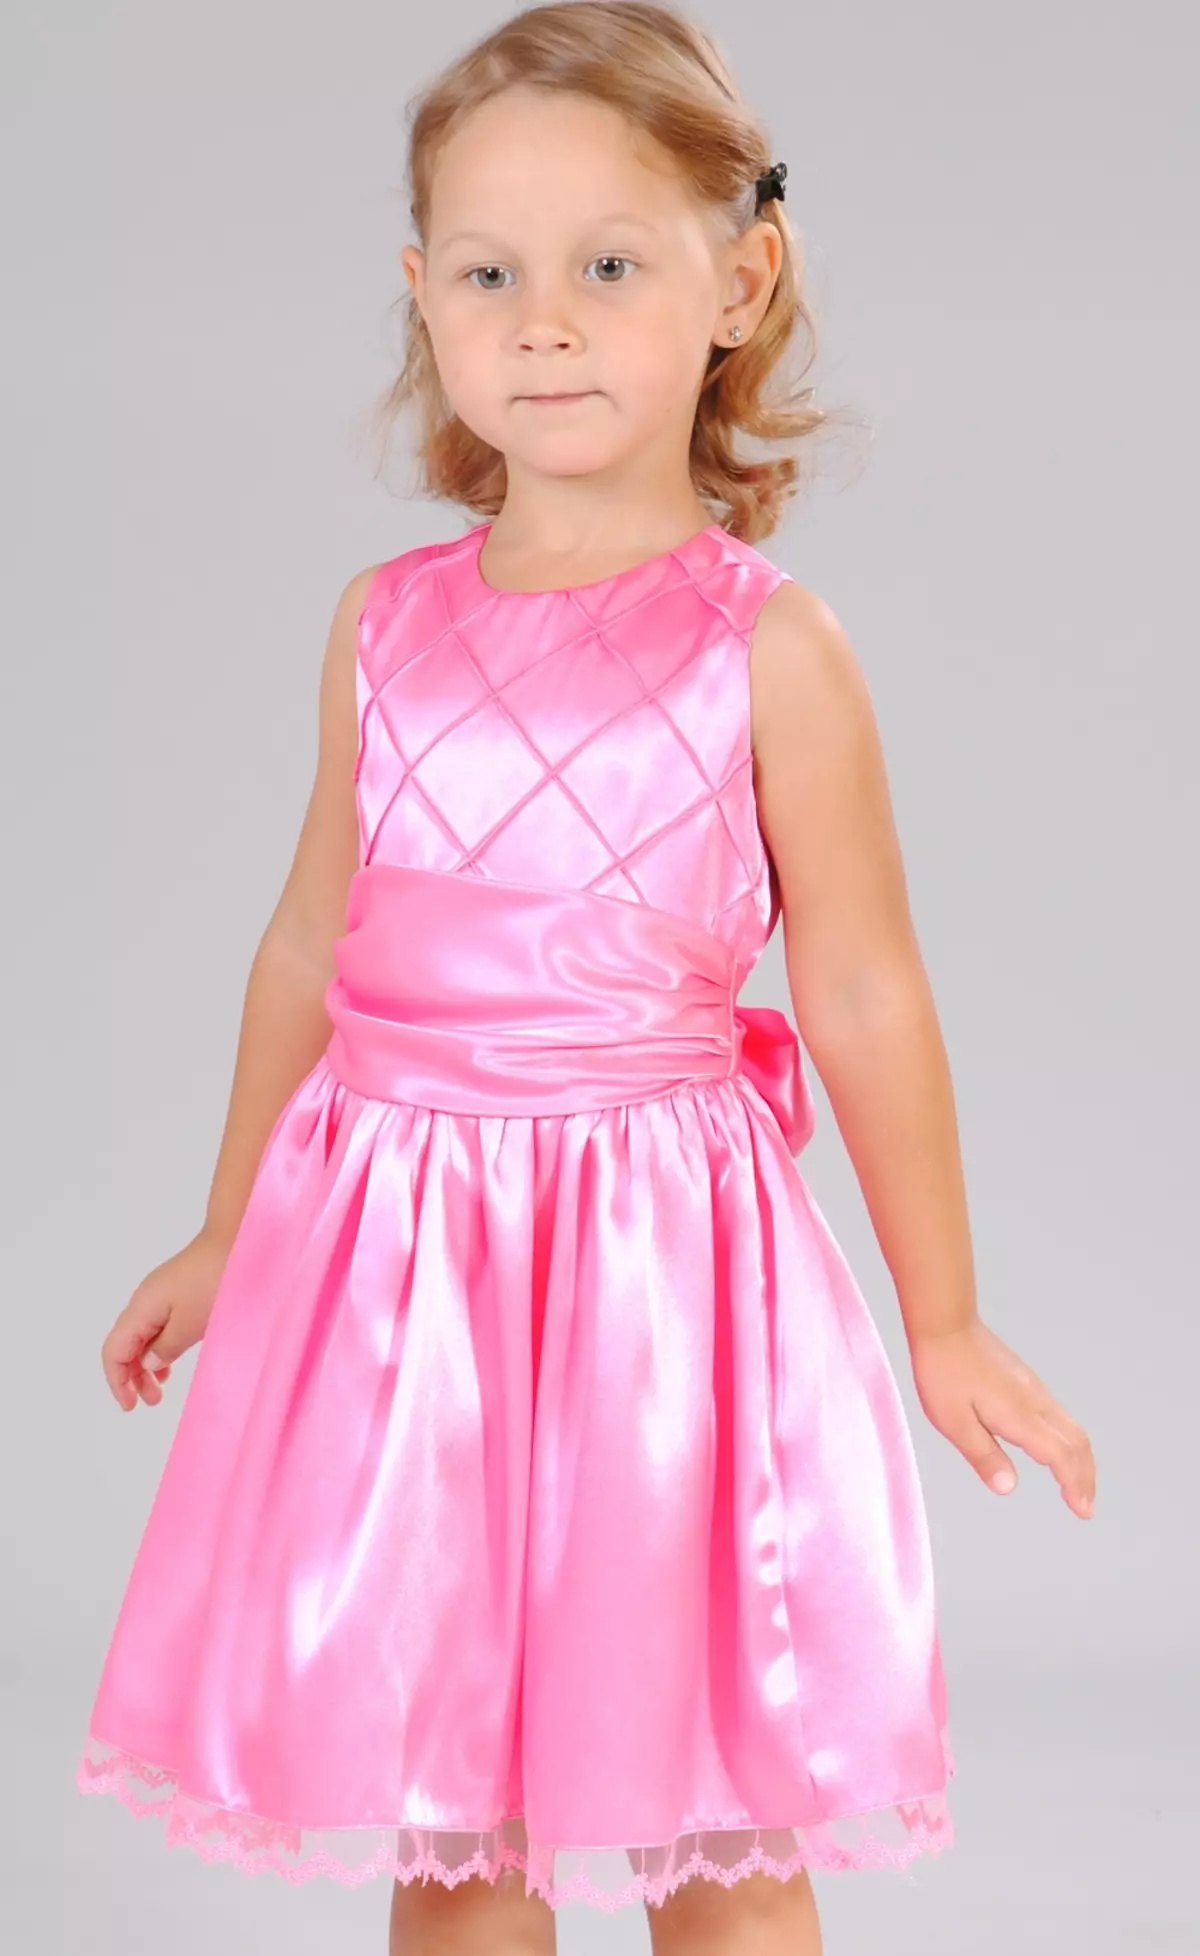 Cutie Susie (52 foto): uniforme scolastica, abiti, costumi e altri indumenti per bambini per ragazze 7 anni, recensioni di prodotti 3792_35